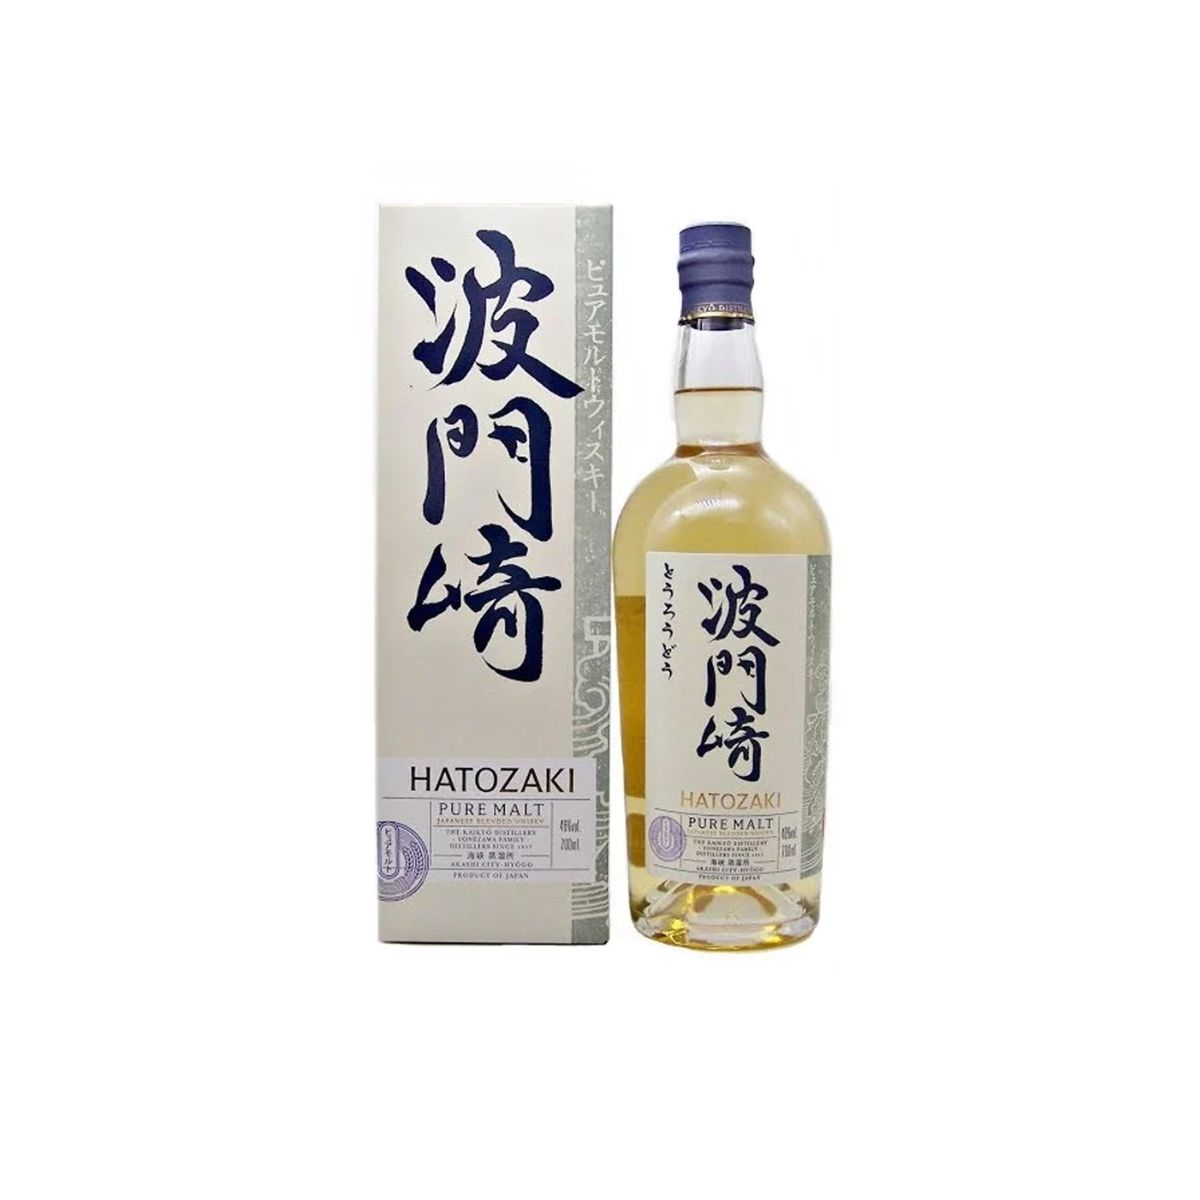 Hatozaki Whisky Malt NV Pure